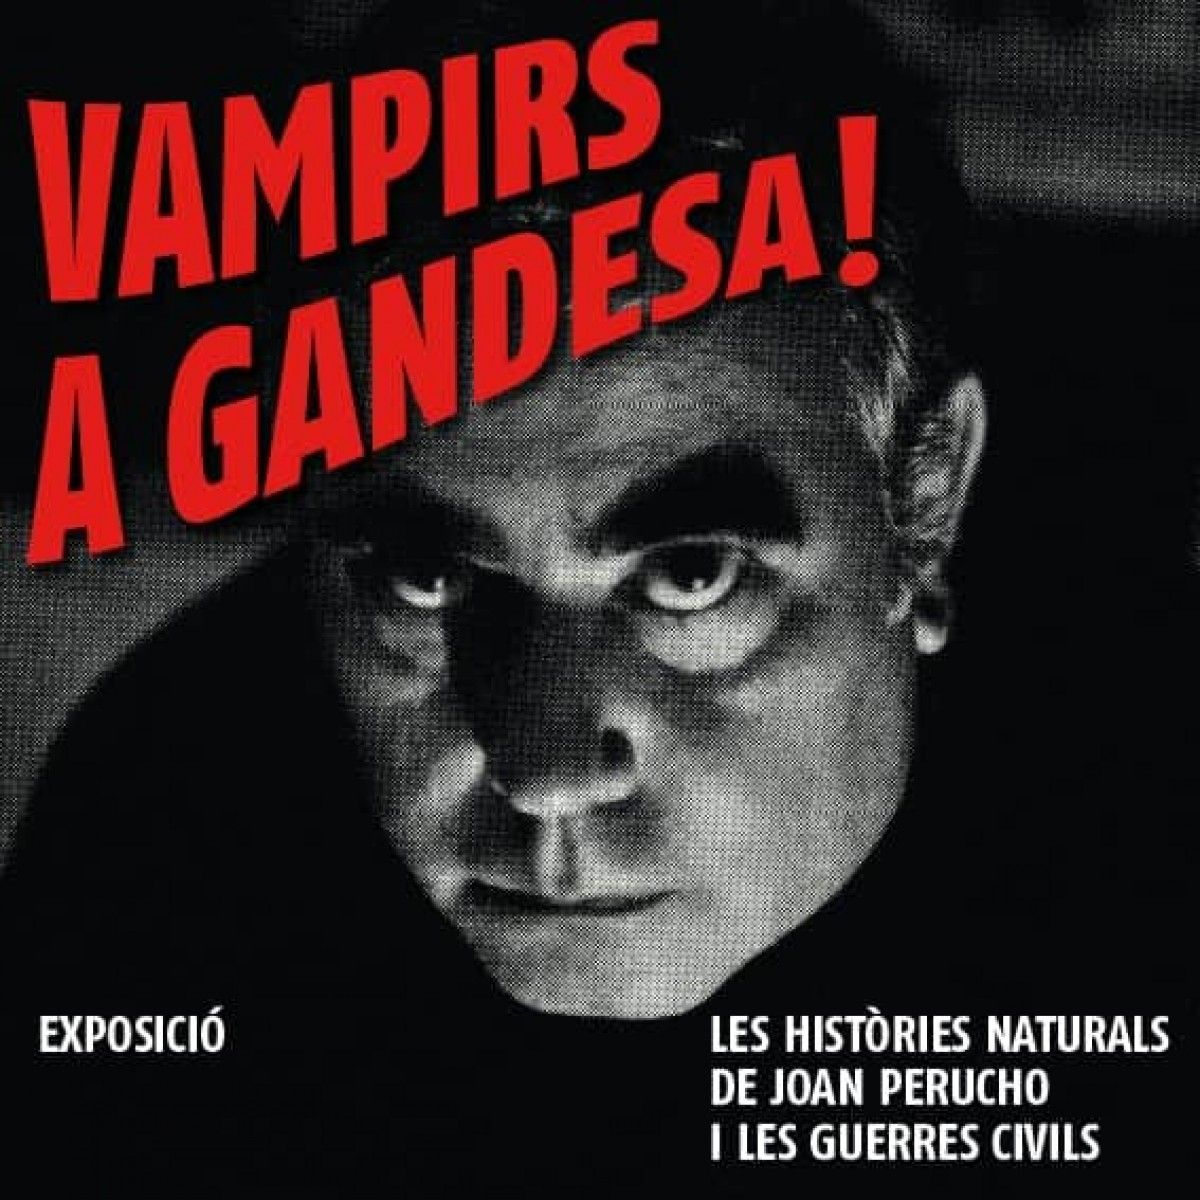 “VAMPIRS A GANDESA! Les històries naturals de Joan Perucho i les guerres civils”